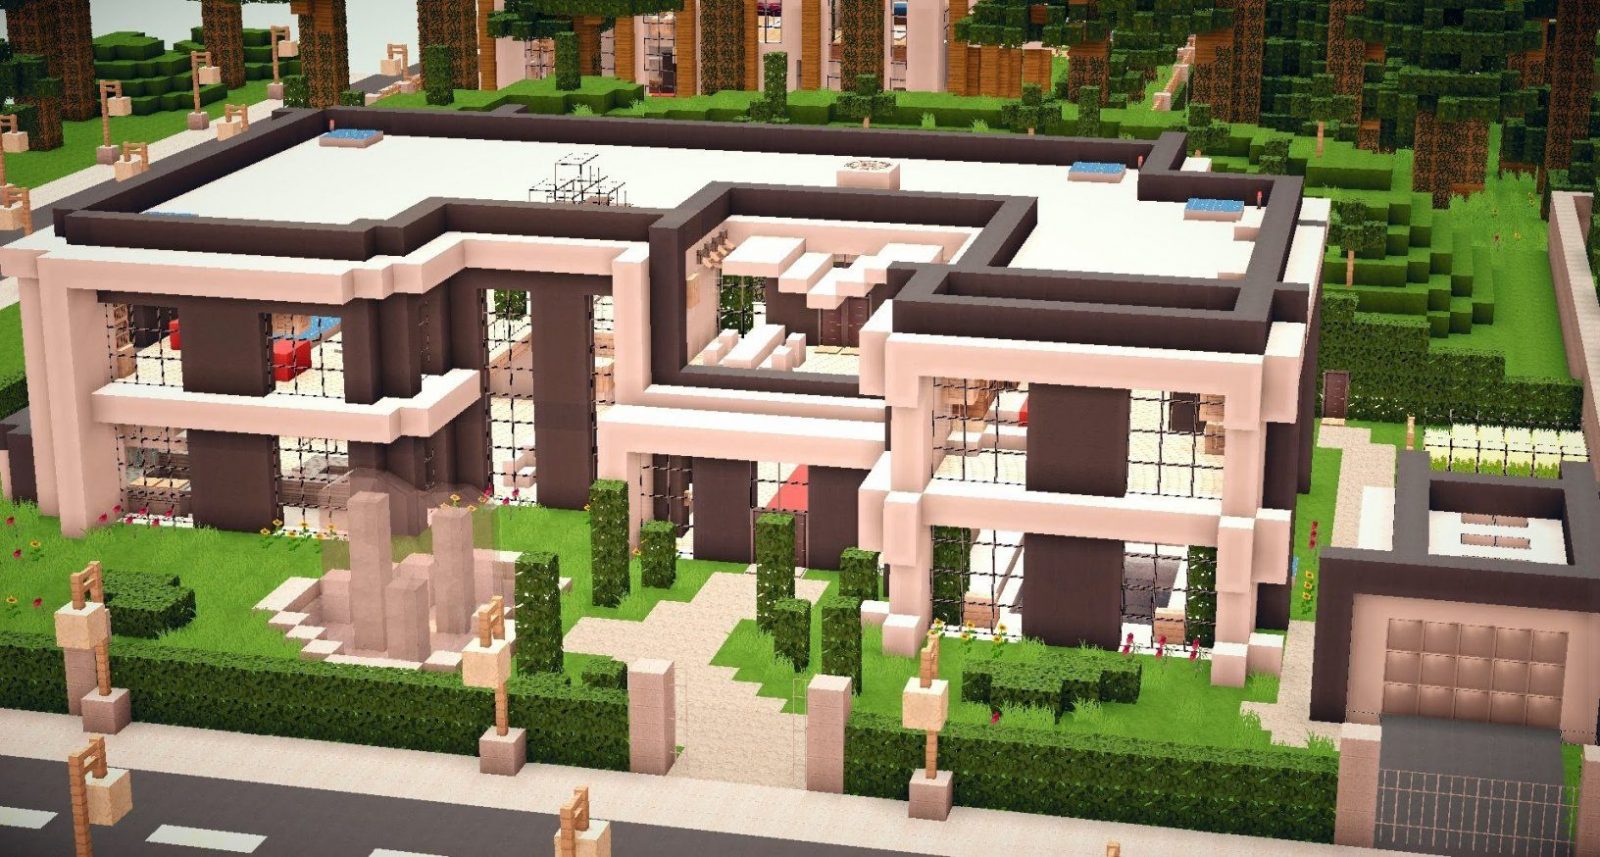 Minecraft  Modern House 011 [Hd][Download]  Youtube von Minecraft Modernes Haus Download Bild